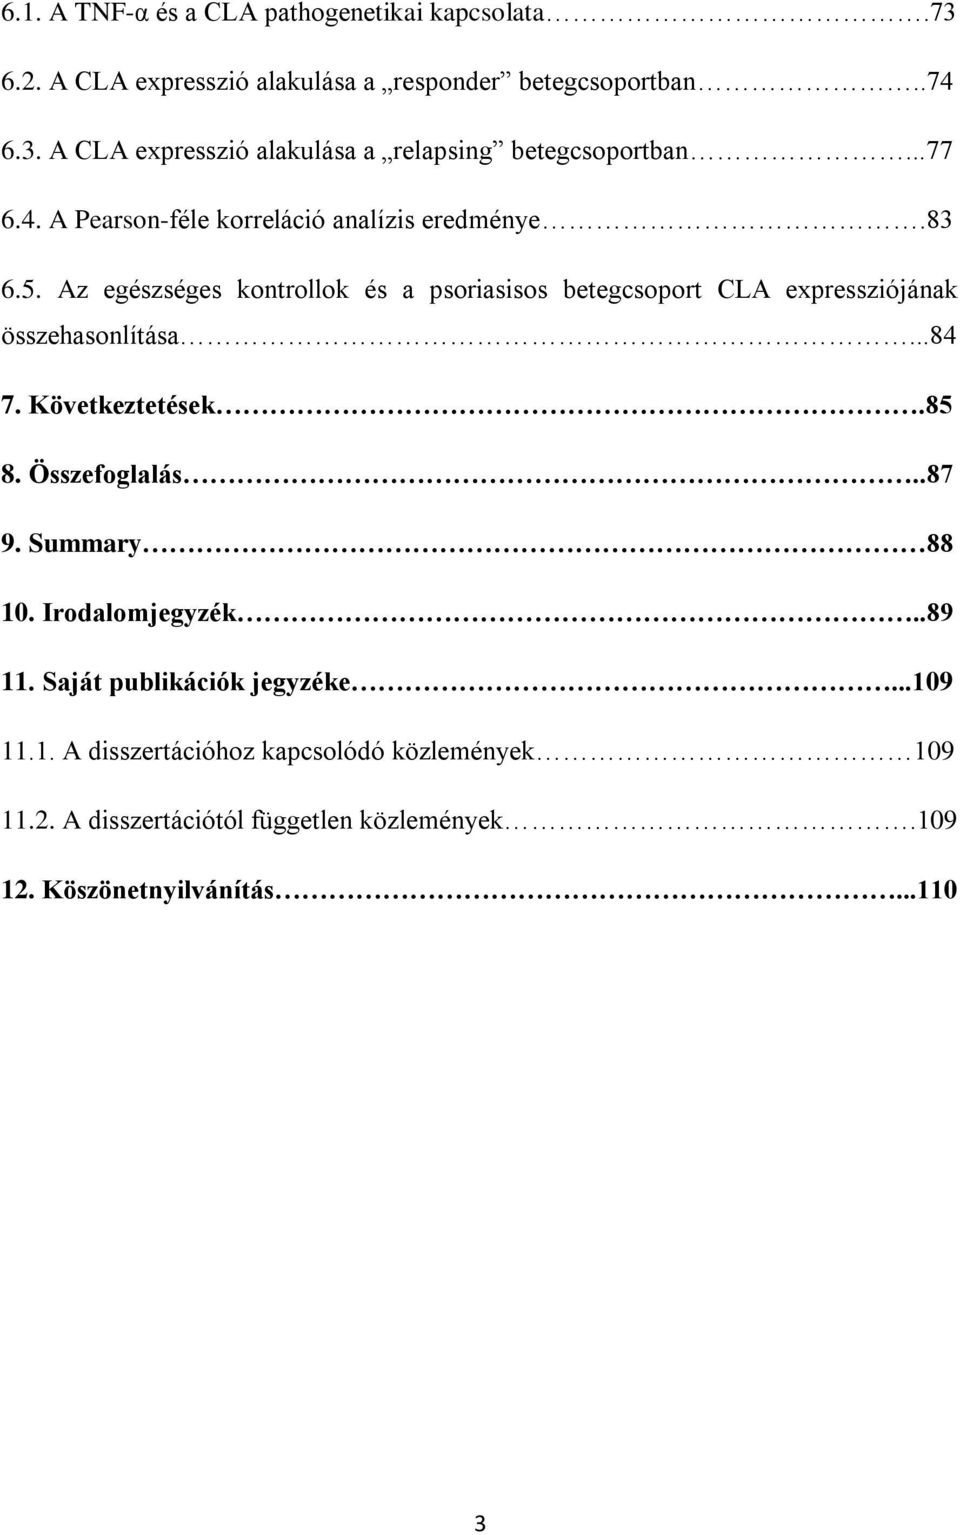 Az egészséges kontrollok és a psoriasisos betegcsoport CLA expressziójának összehasonlítása...84 7. Következtetések.85 8. Összefoglalás..87 9.